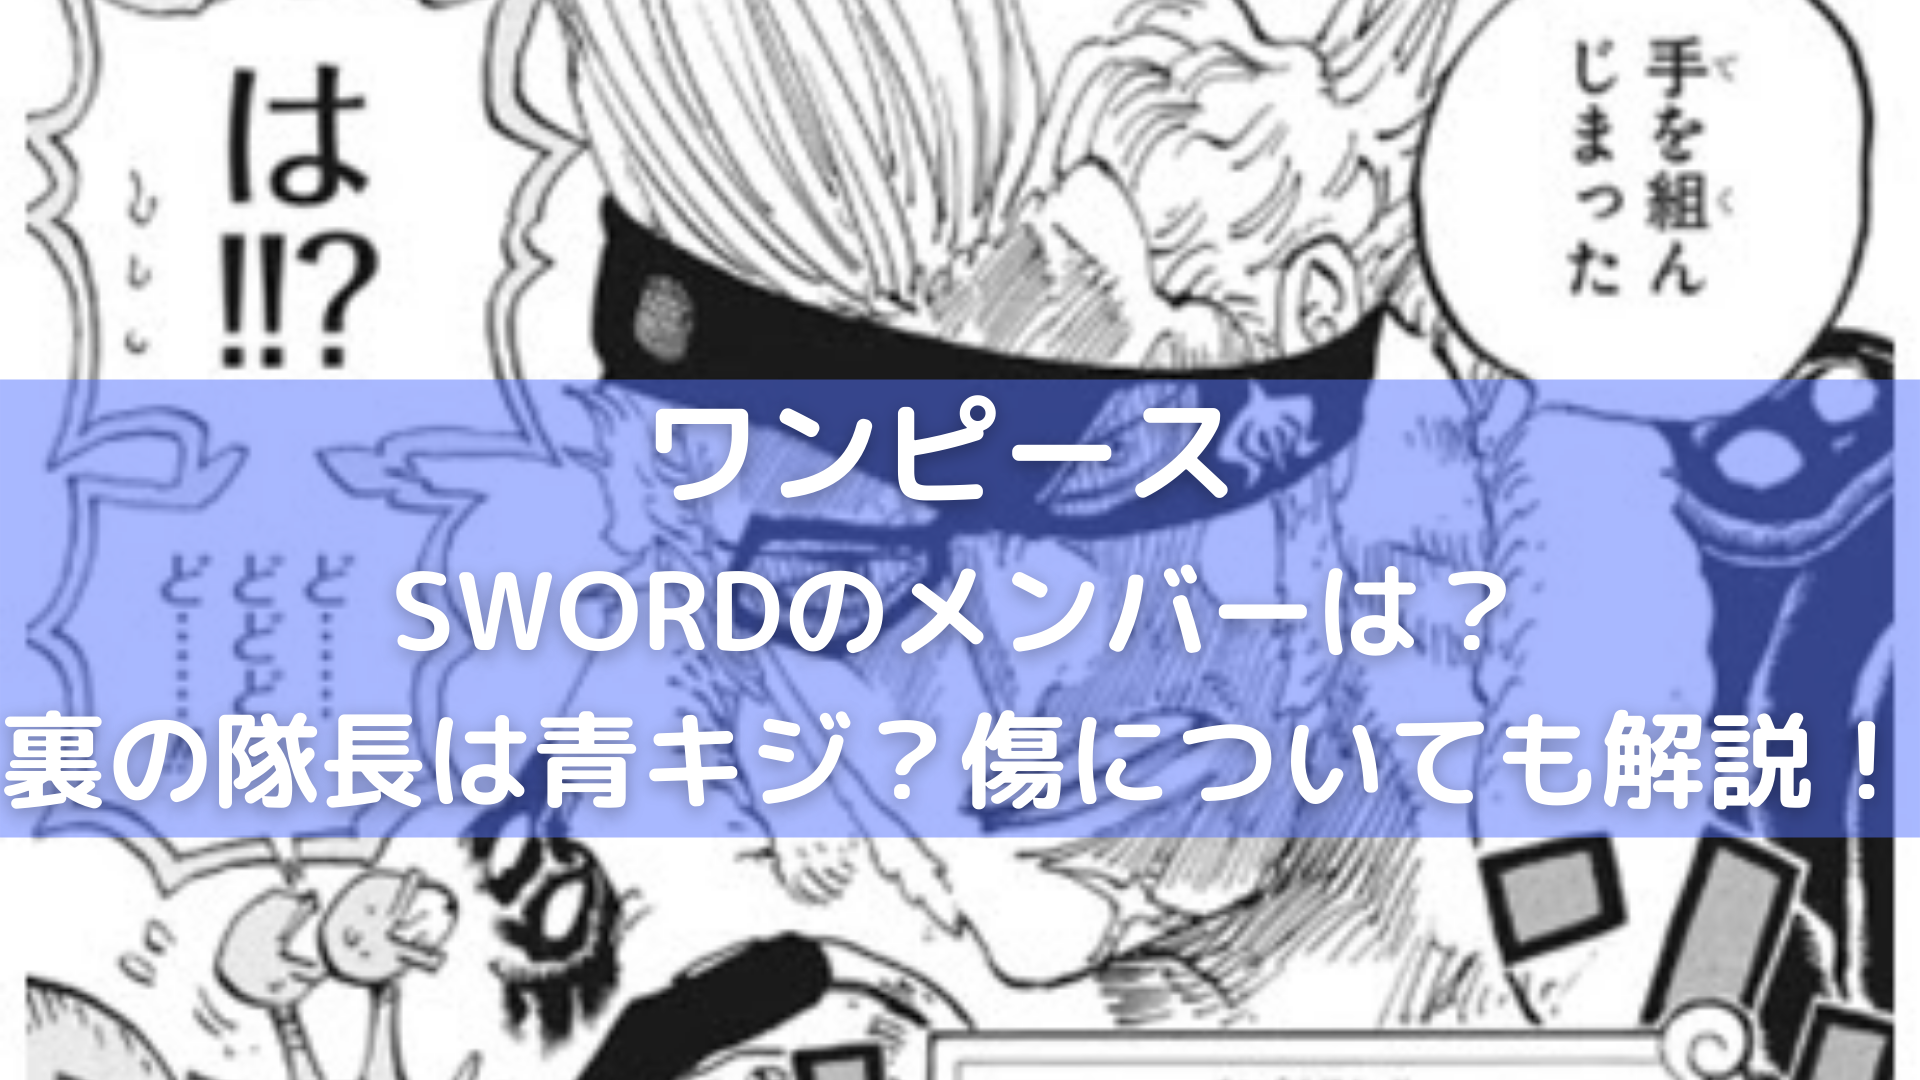 ワンピース 青キジは海軍sword ソード のメンバー ドレーク コビーの共通点はxの傷 漫画情報 Info